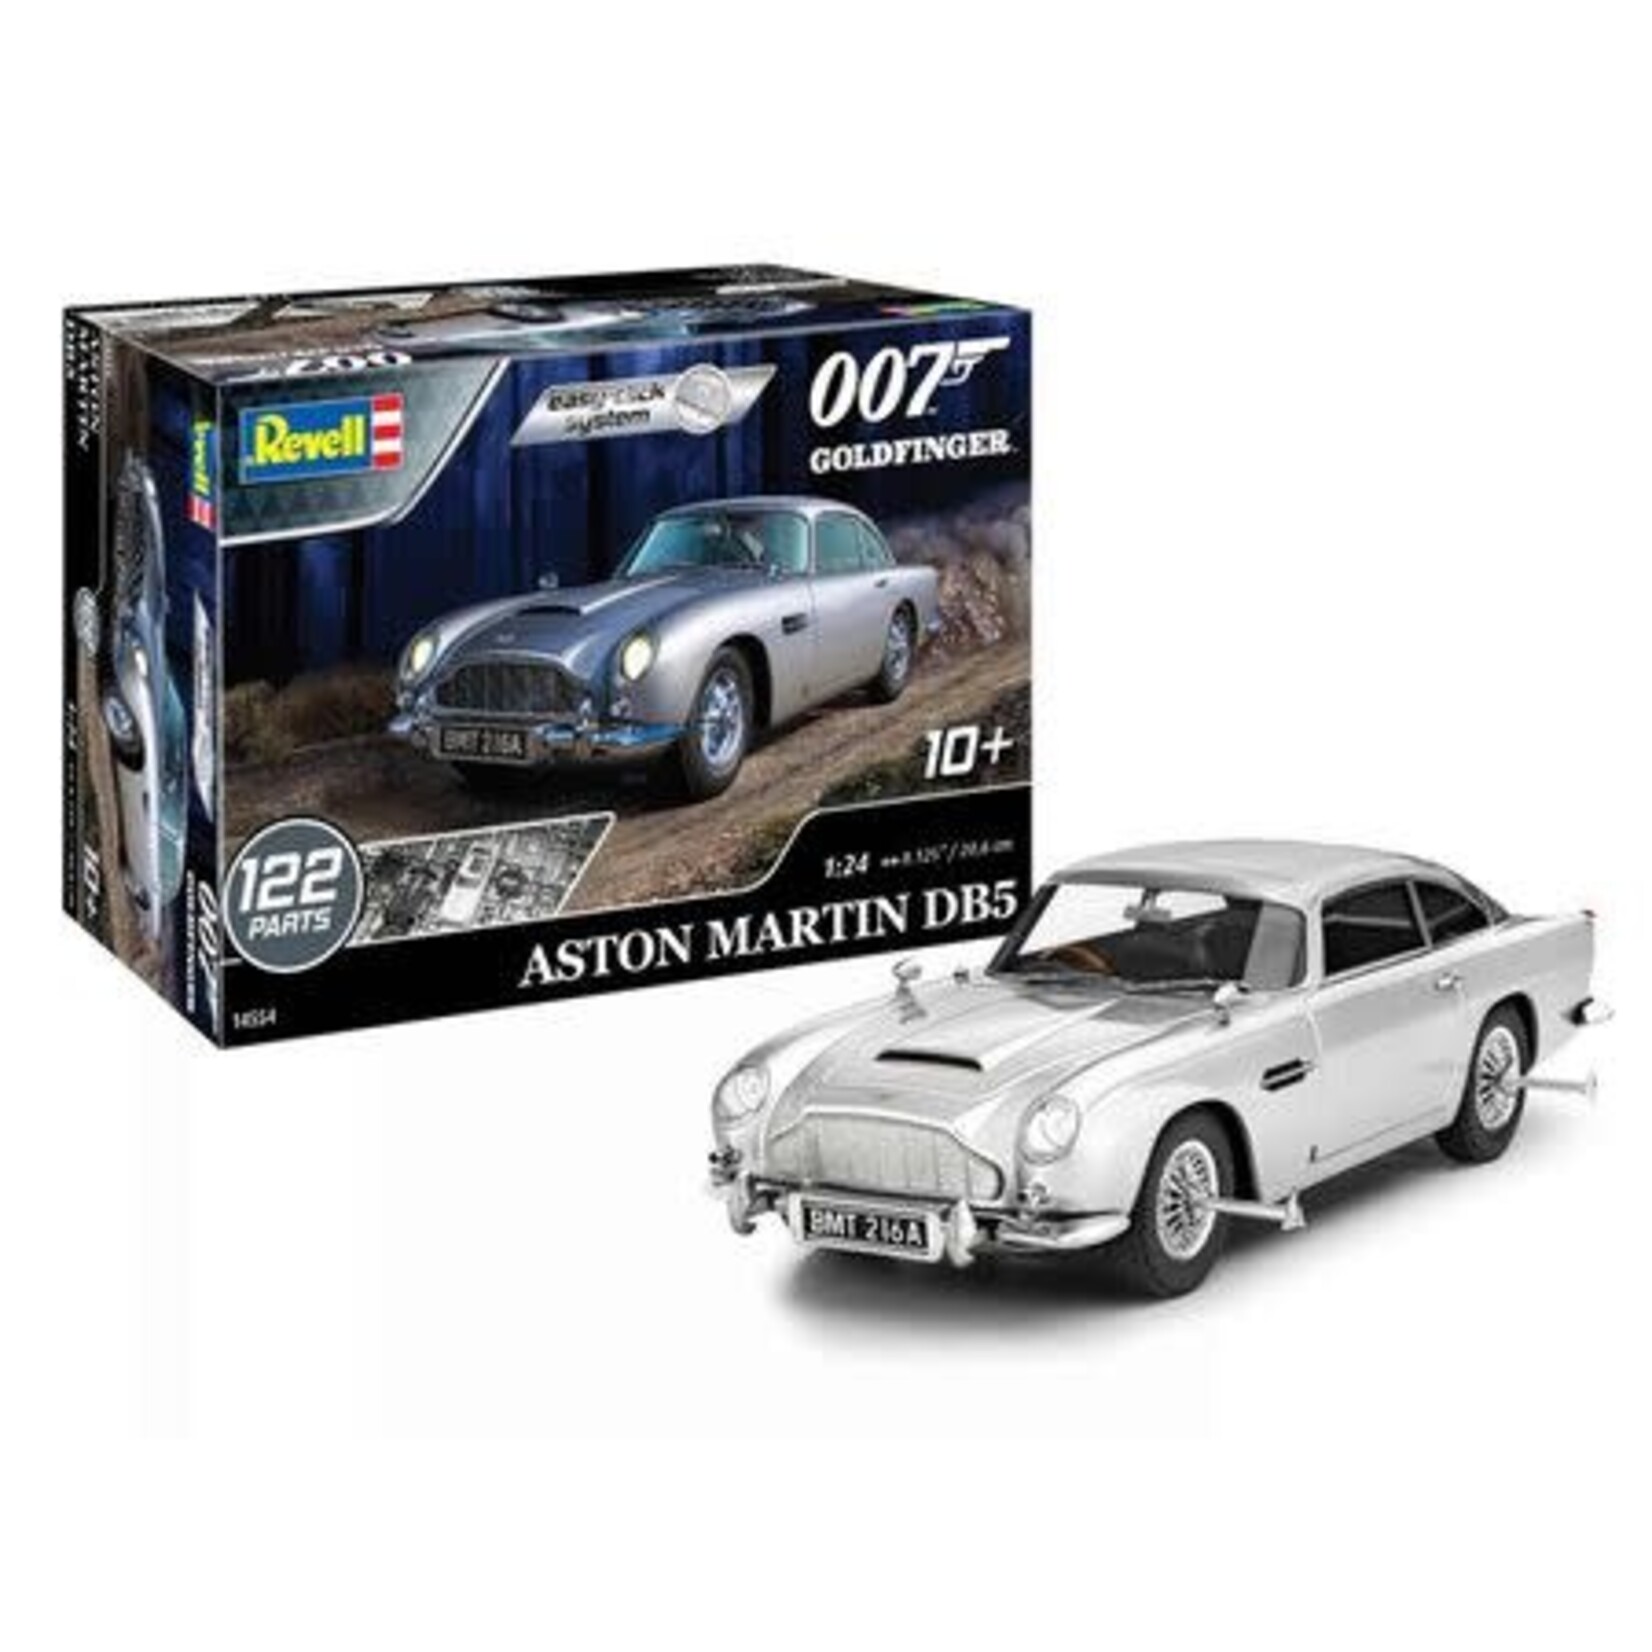 Revell-Monogram 1/24 AstonMartin DB5 James Bond 007 Goldfinger